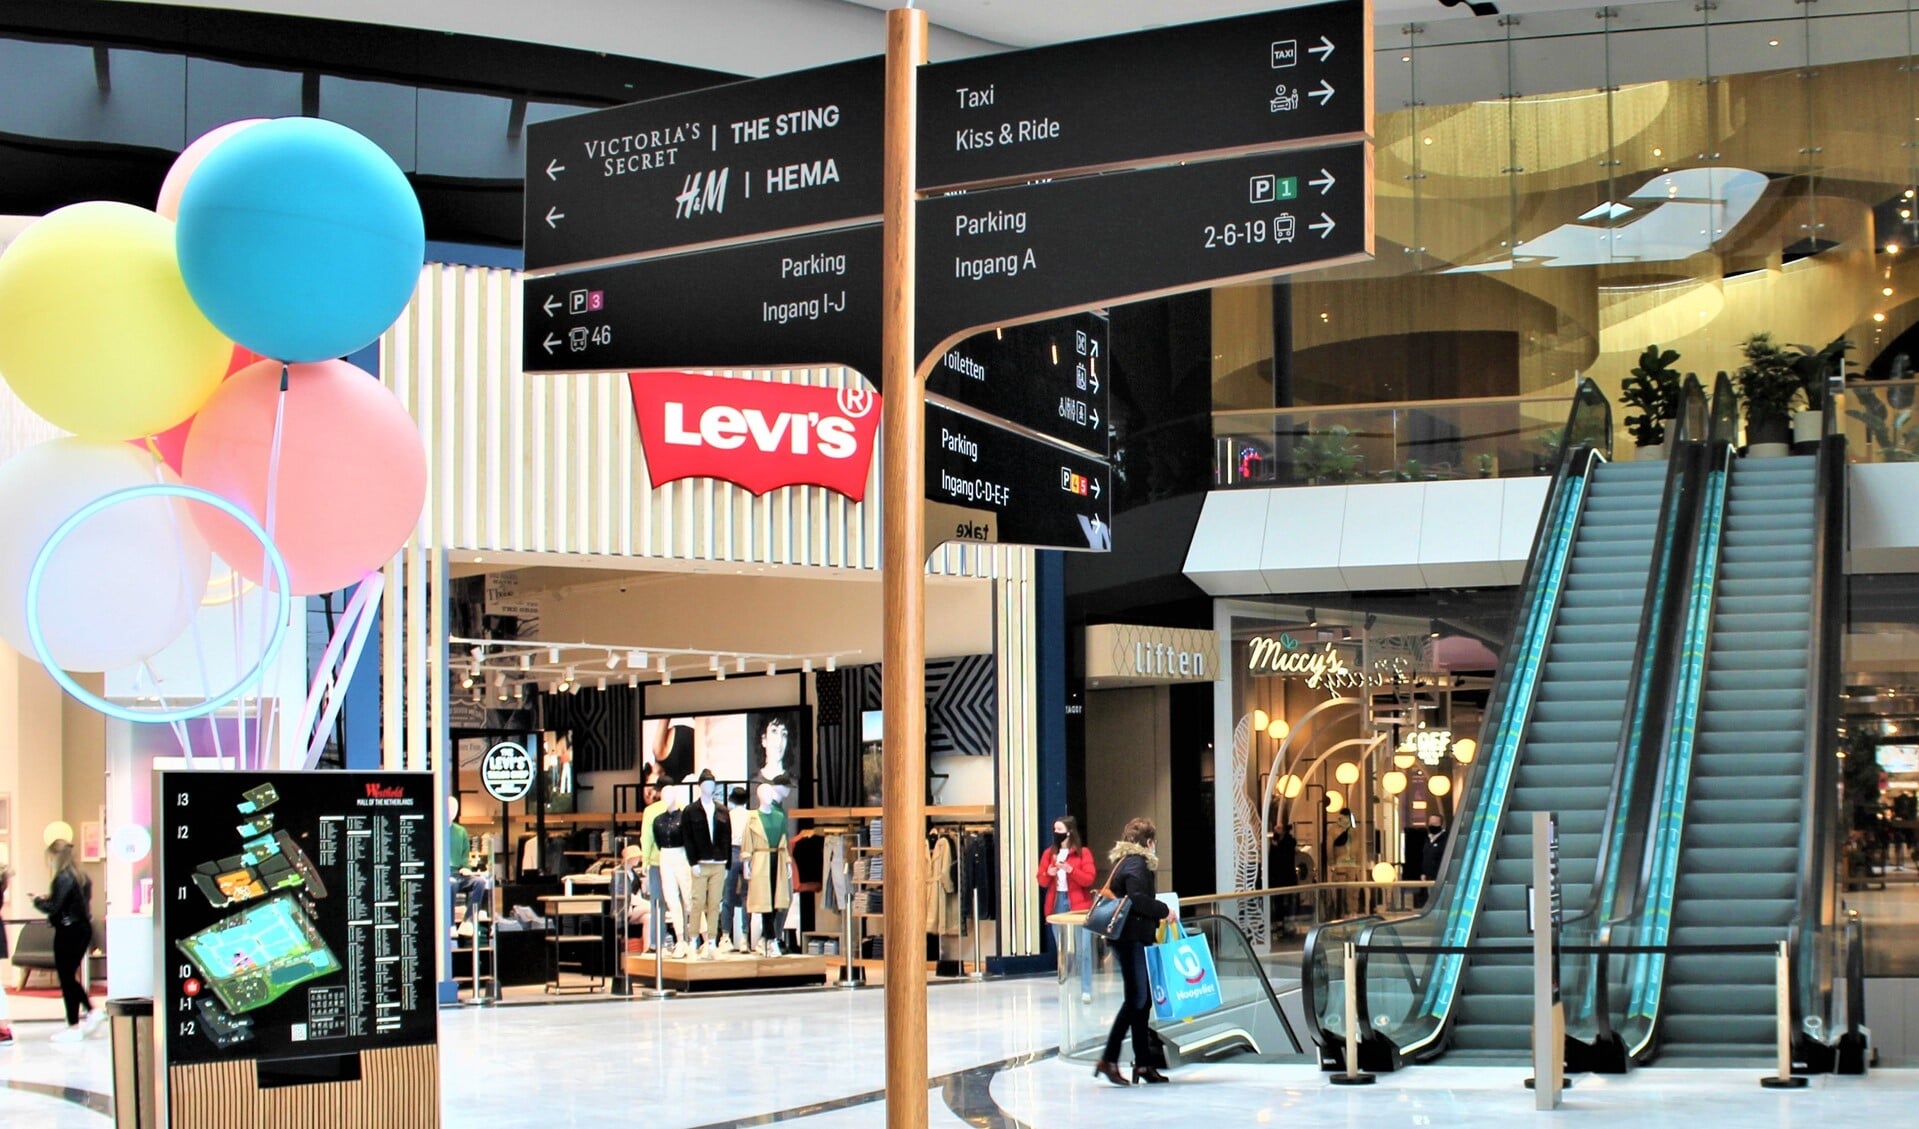 De VVD wil in de Westfield Mall graag verwijzingsborden en/of andere manieren om lokale bezienswaardigheden onder de aandacht te brengen (foto: Joni Israel).